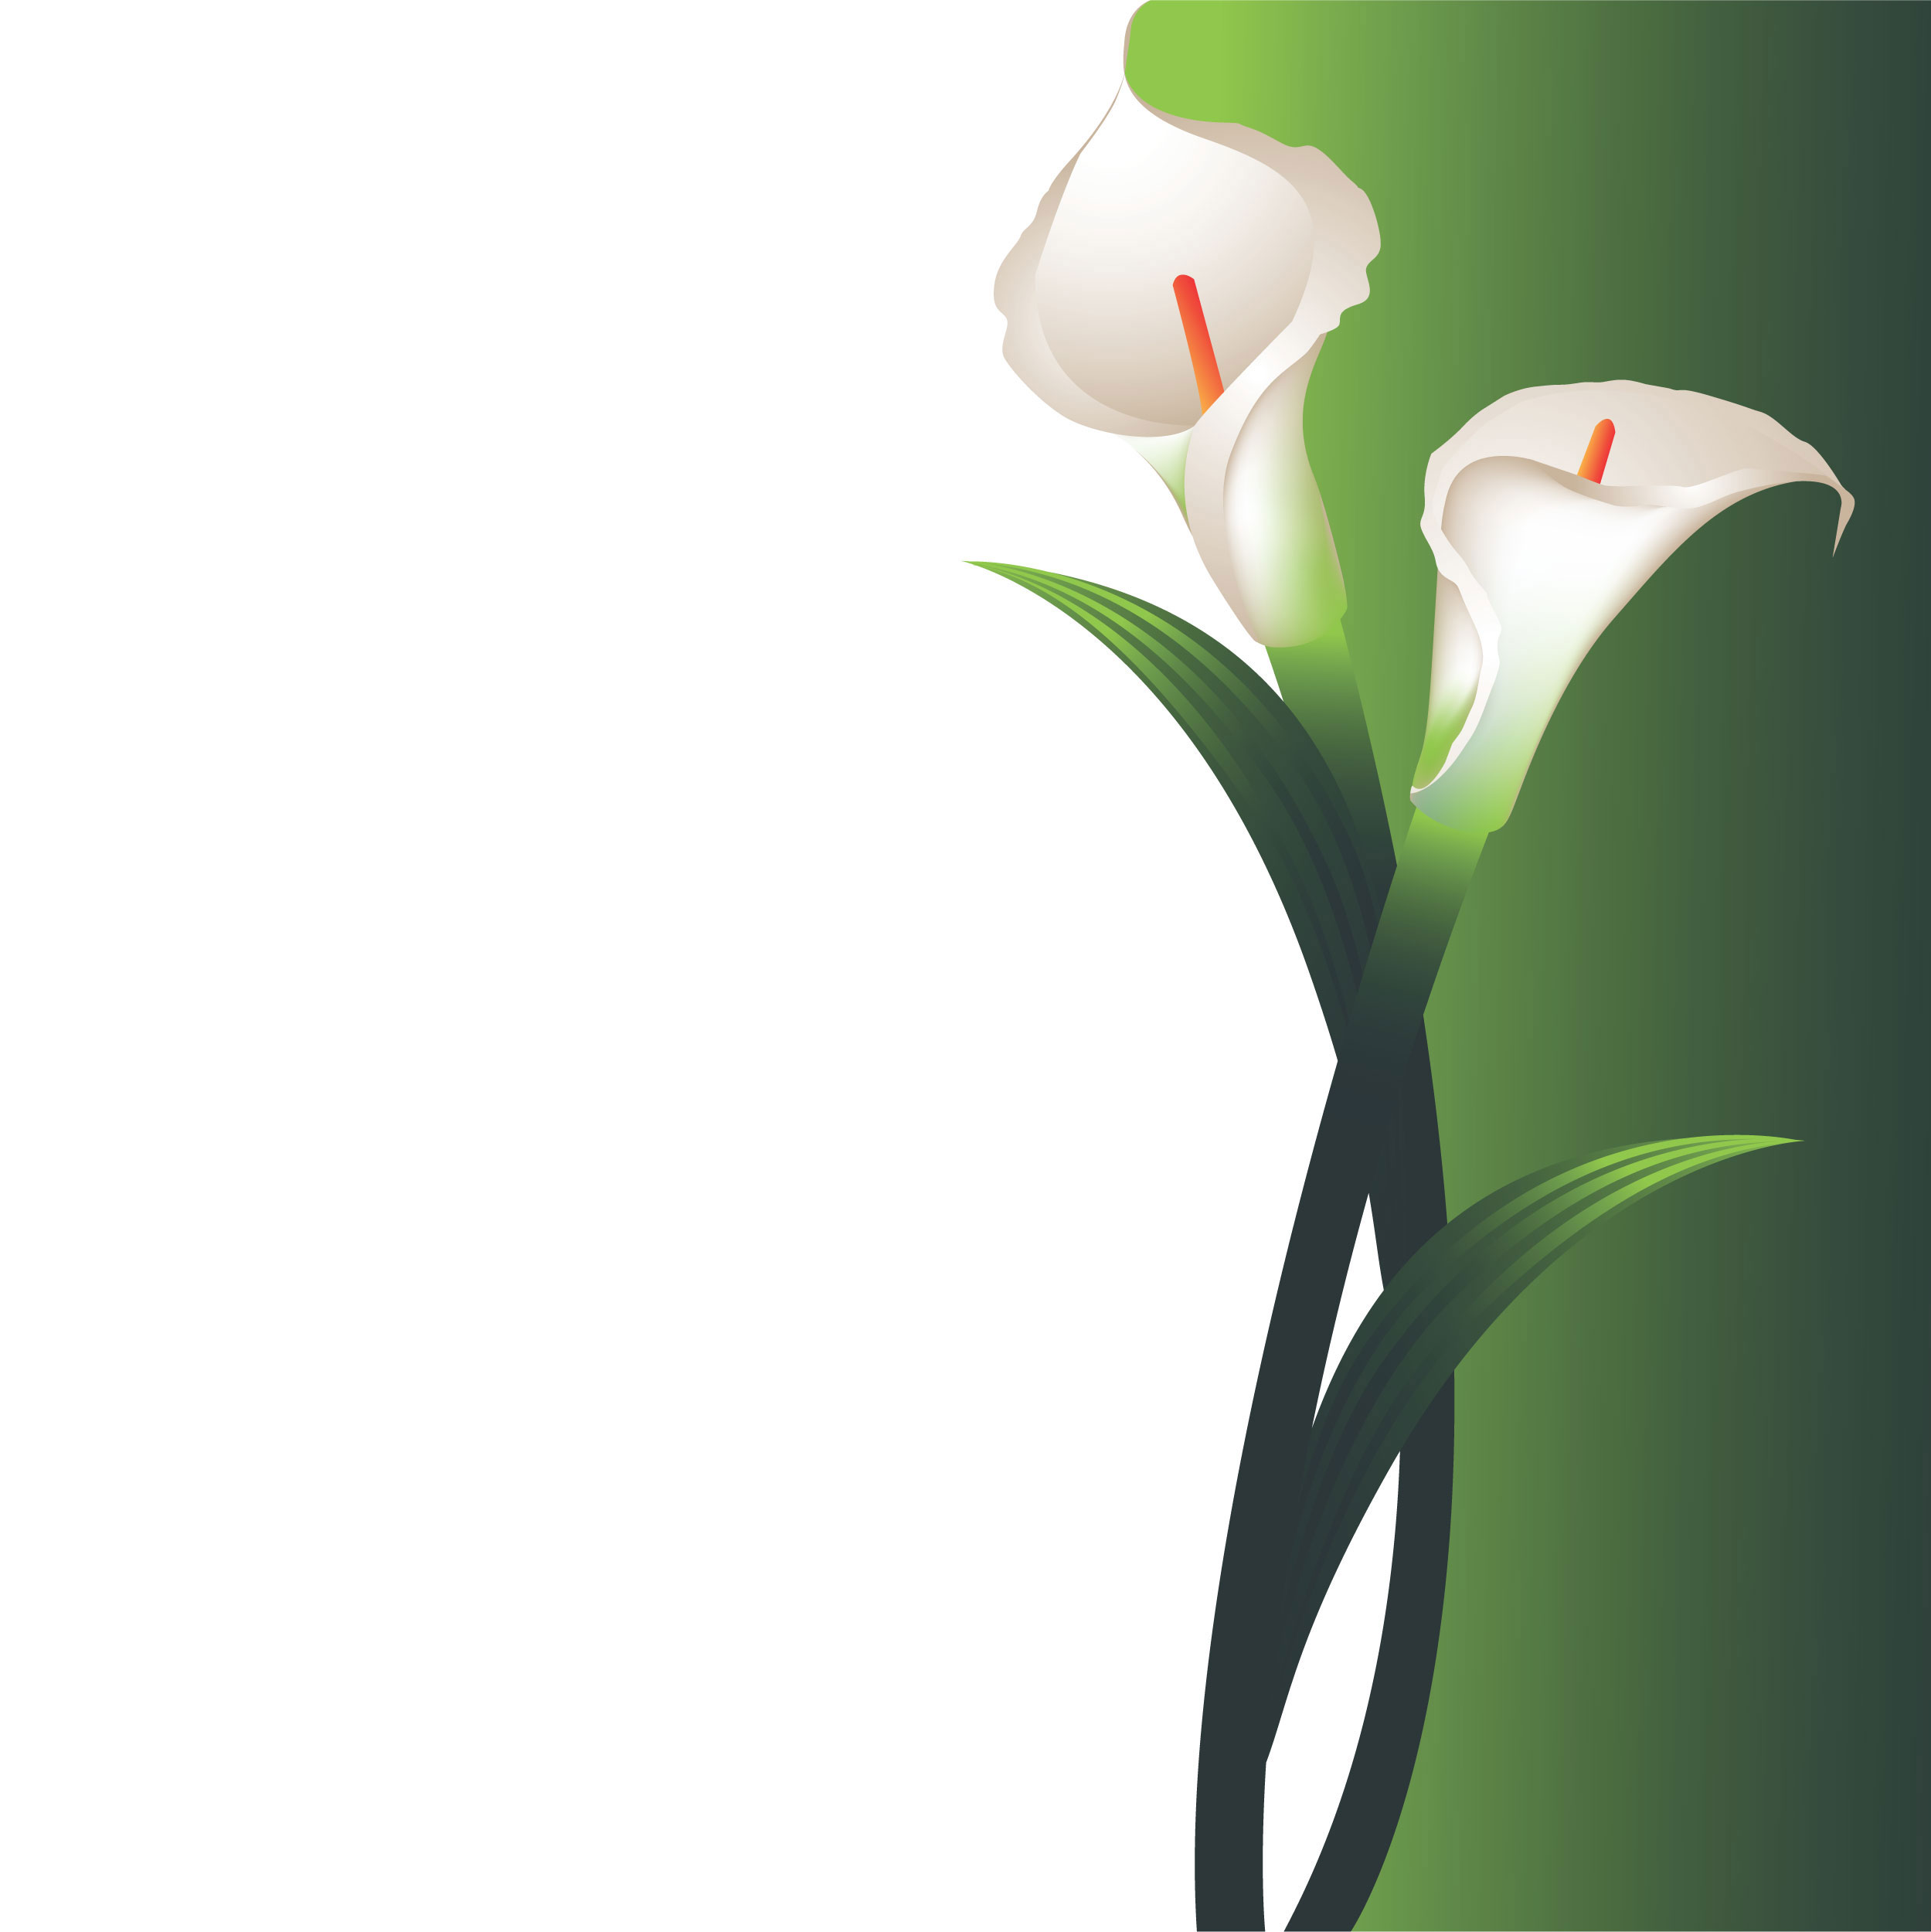 花のイラスト フリー素材 壁紙 背景no 591 カラーリリー 白緑